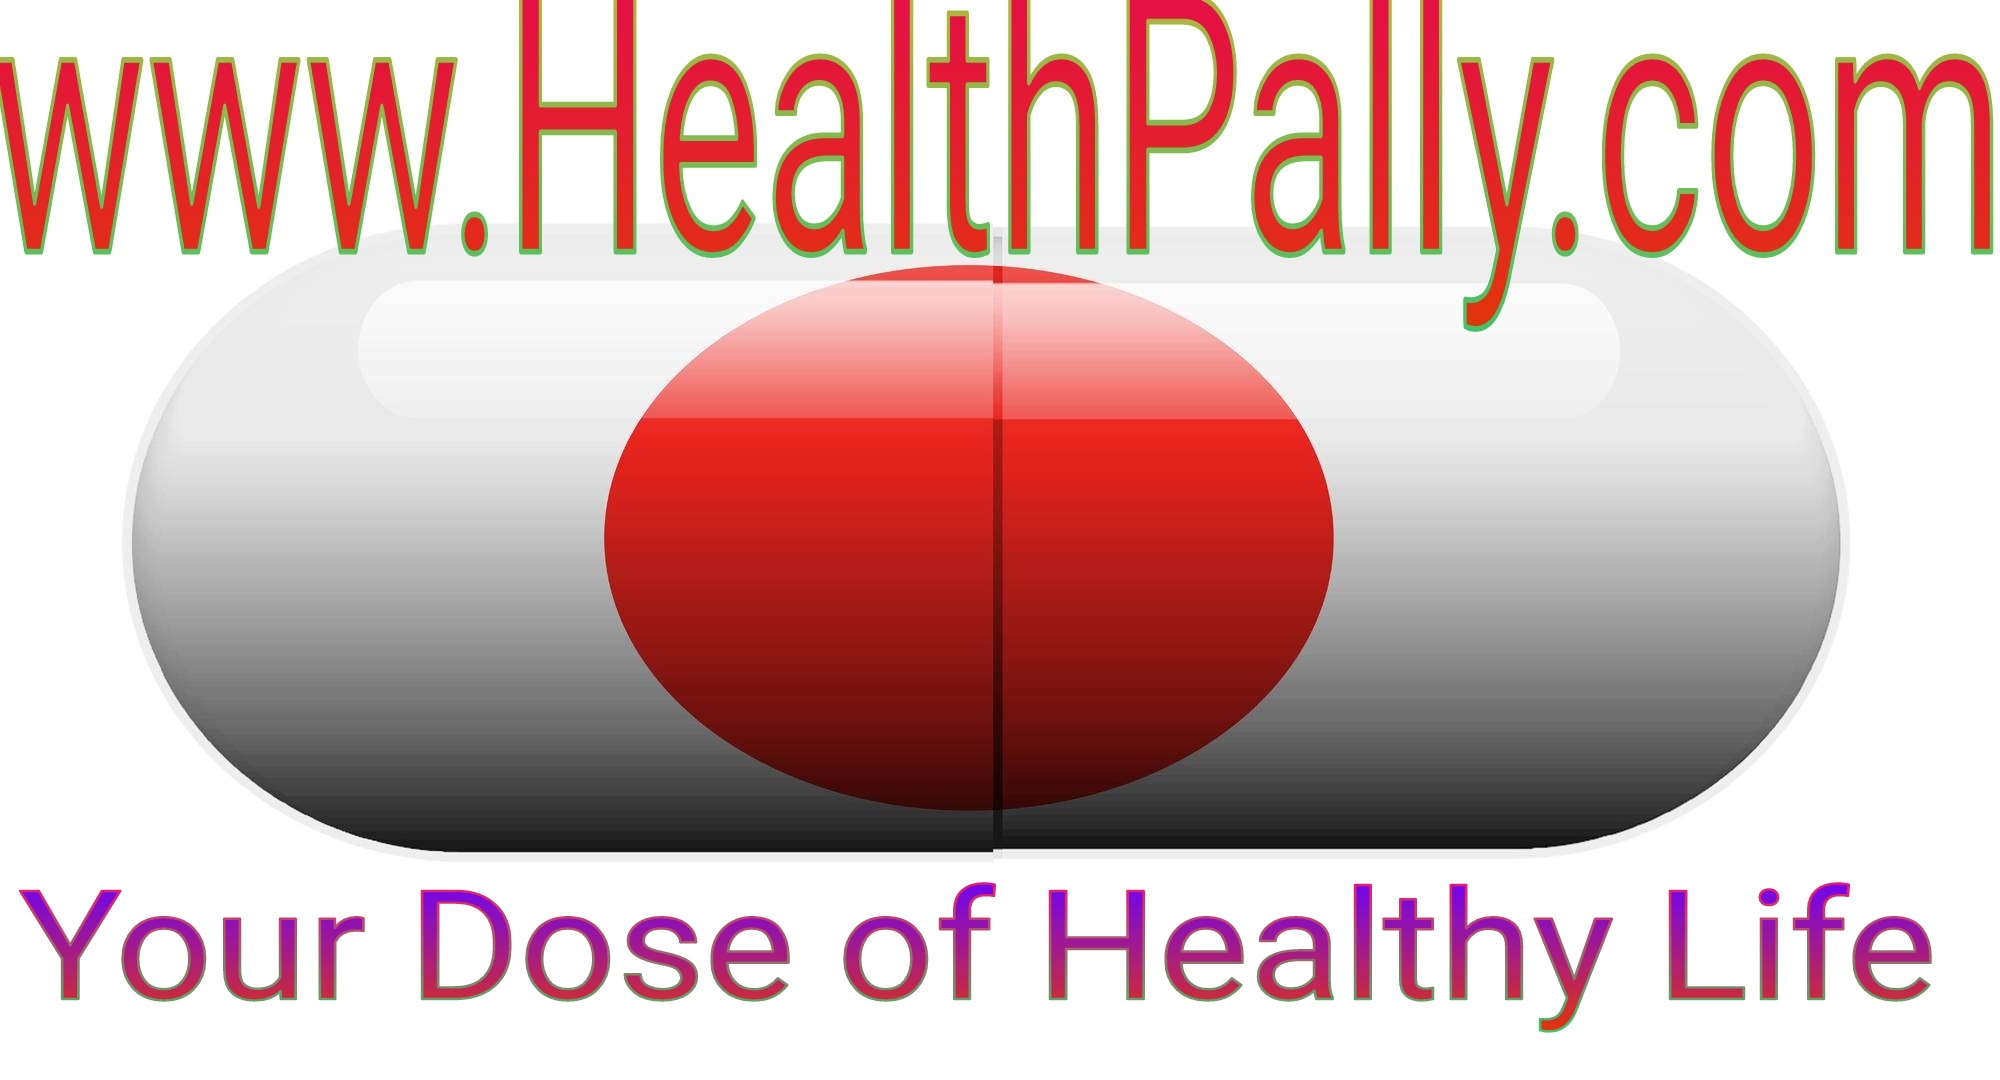 Healthpally.com healthy living talkshow, Atascosa, Texas, United States